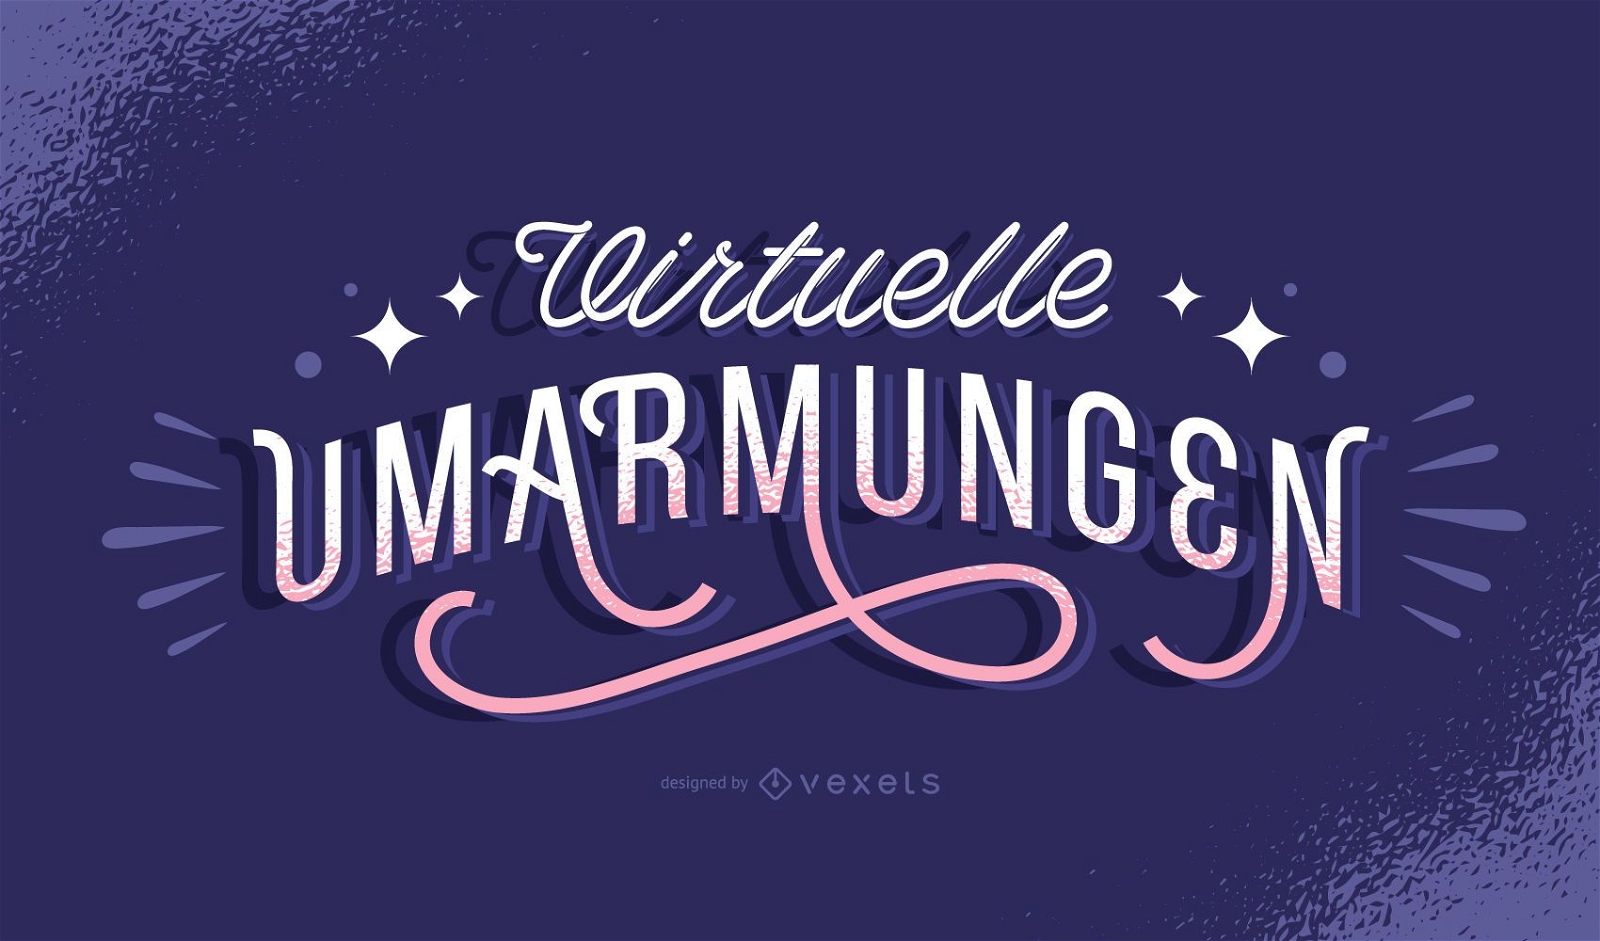 Virtual hugs german lettering